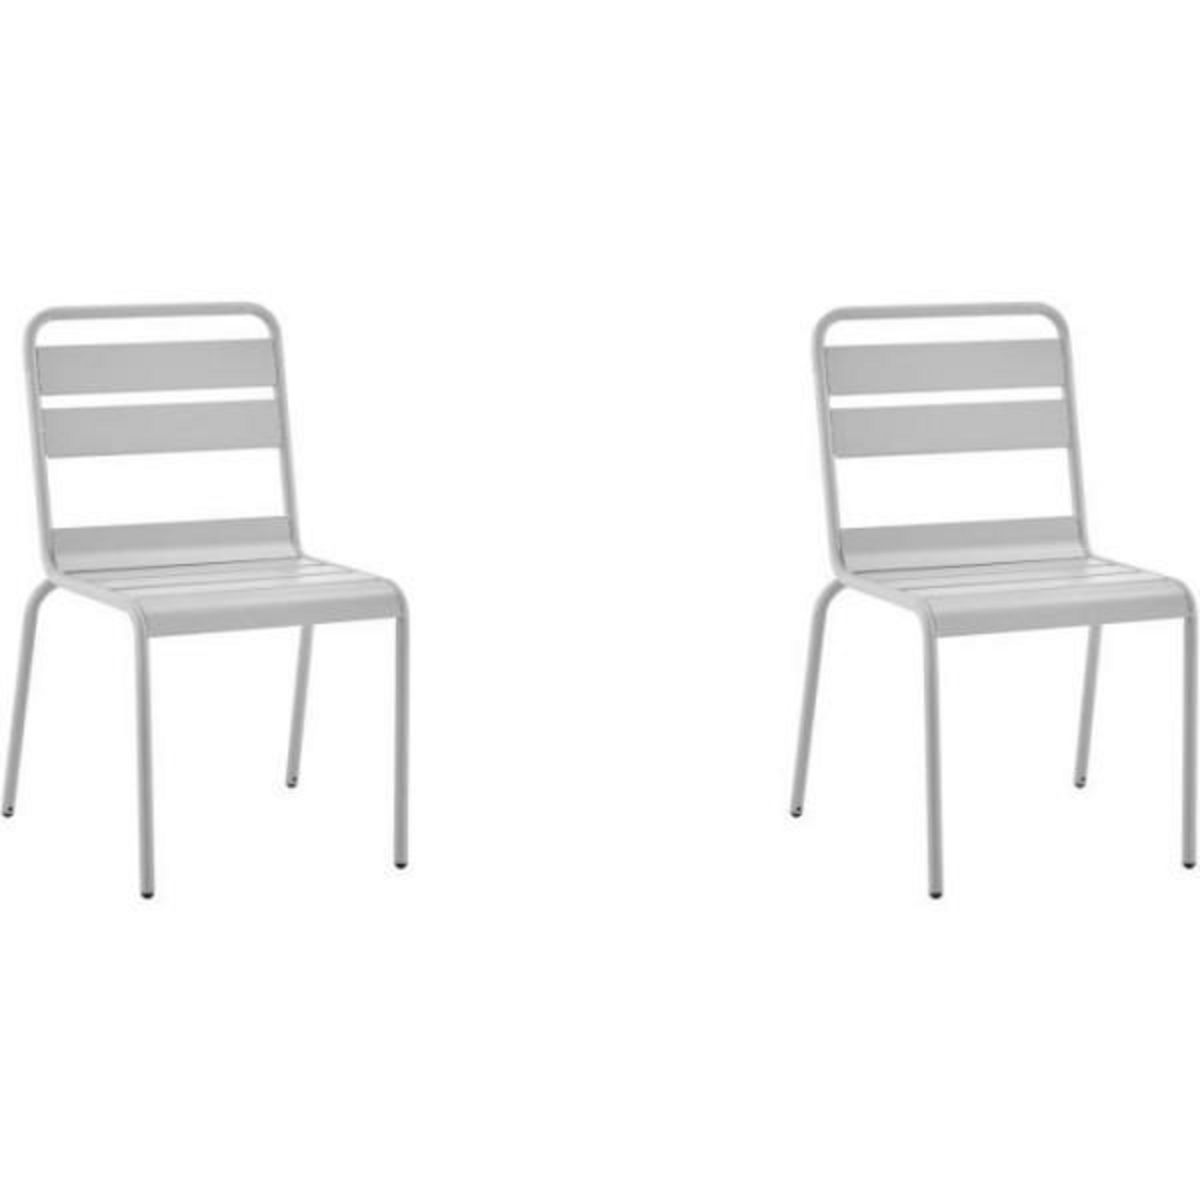 MARKET24 Lot de 2 chaises de jardin - Acier - Gris